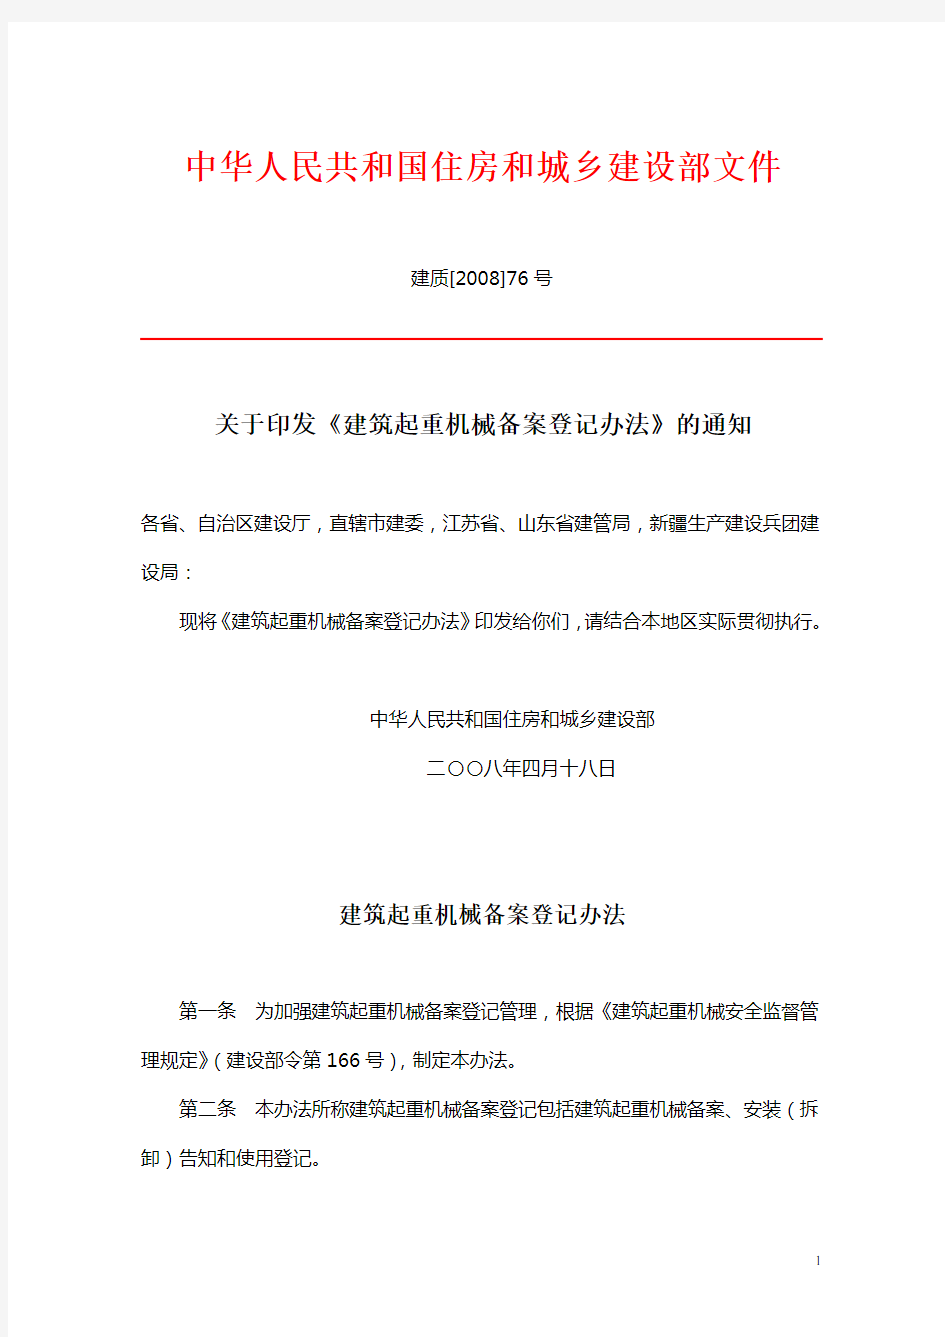 中华人民共和国住房和城乡建设部文件建质[2008]76号《建筑起重机械备案登记办法》